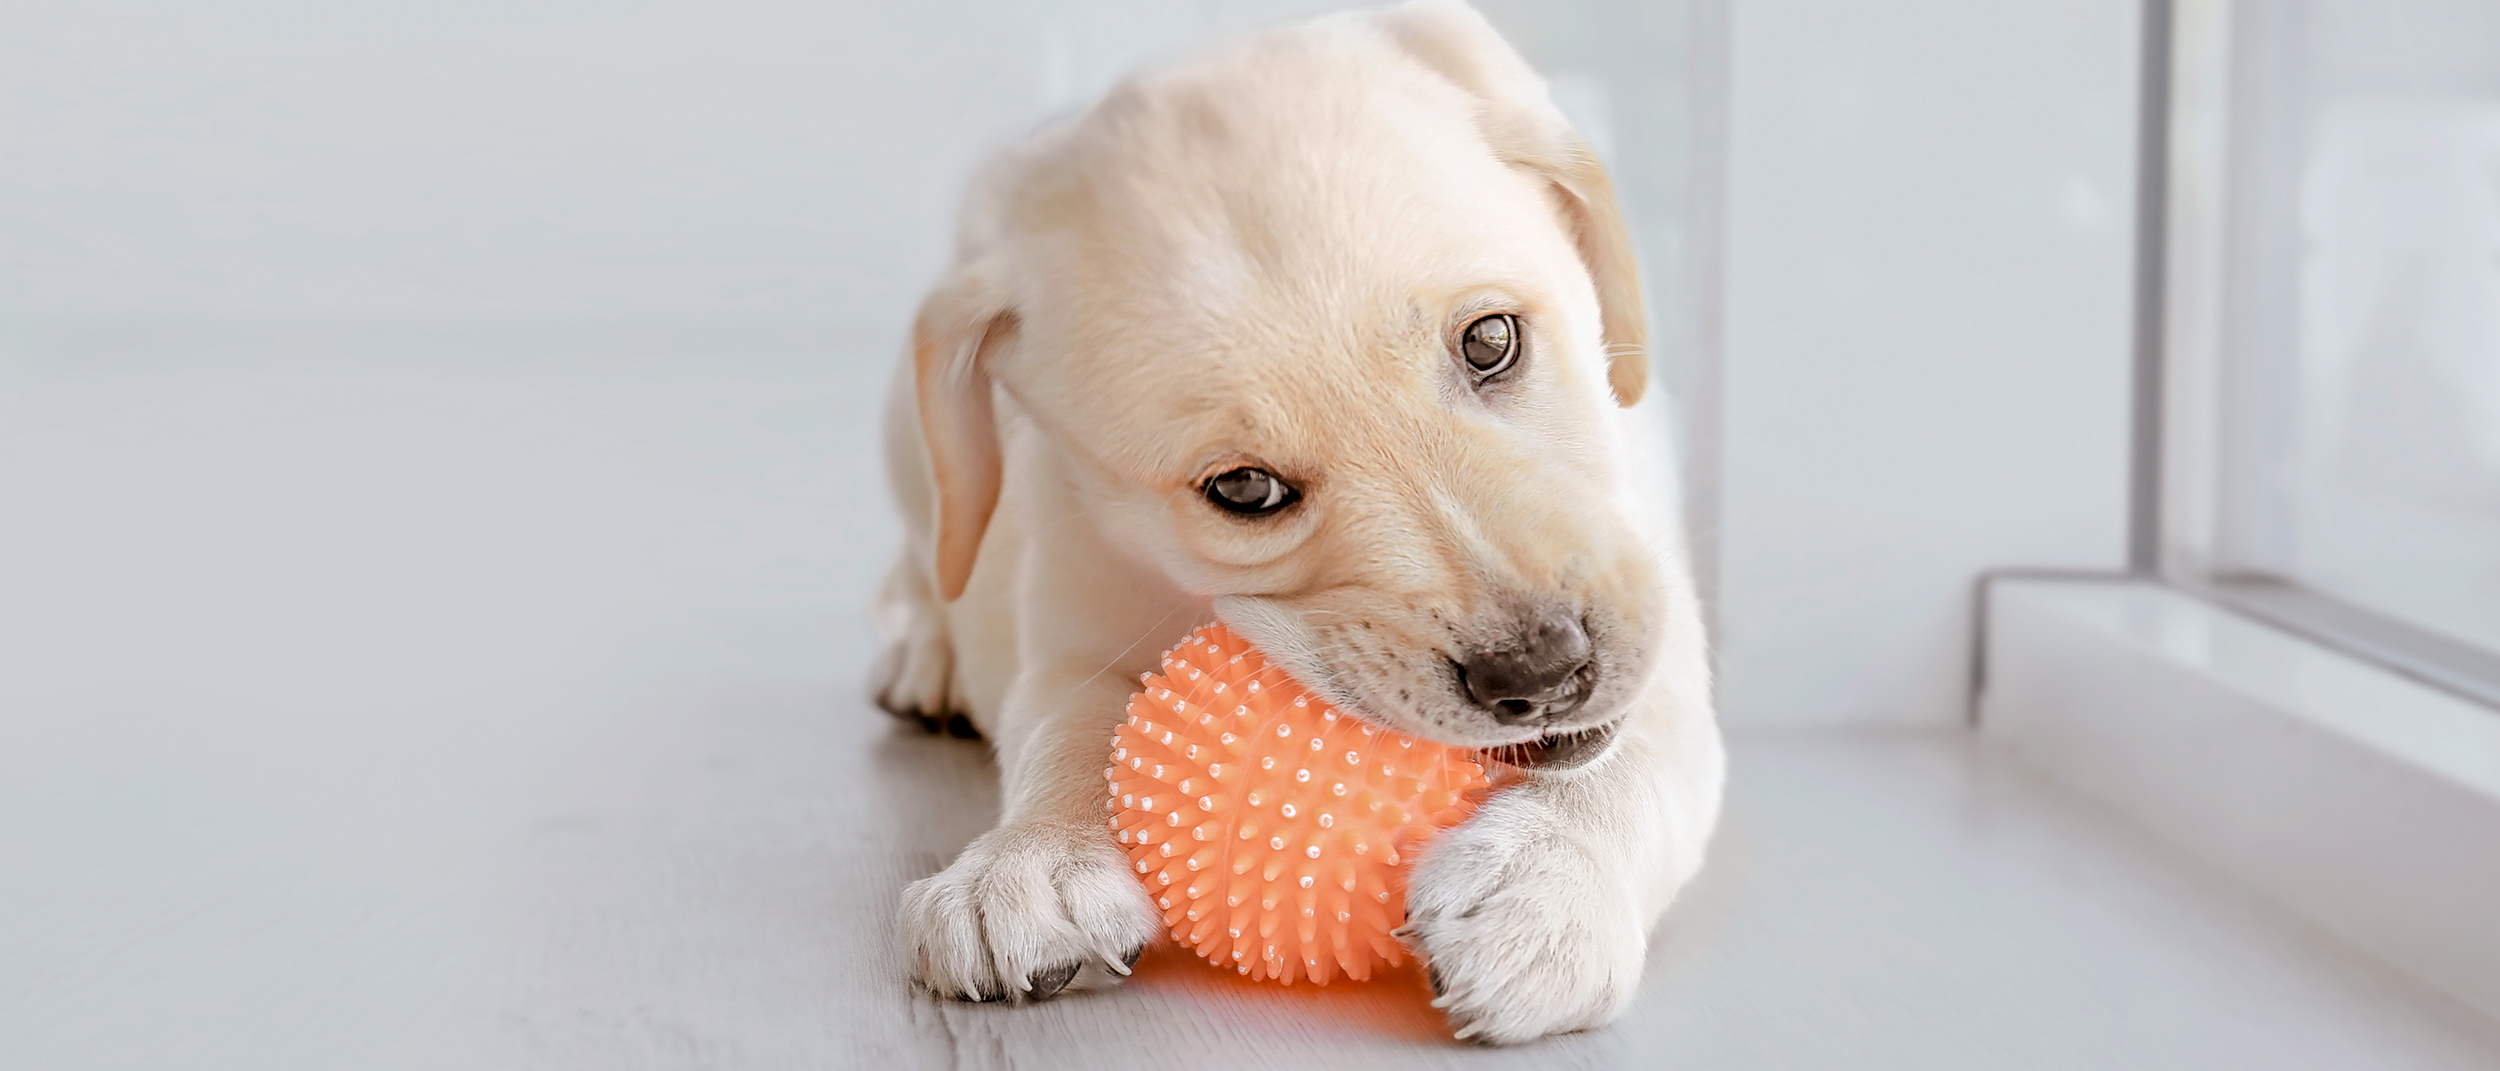 Labrador Retriever puppy liggend op een houten vloer terwijl hij op een bal kauwt.